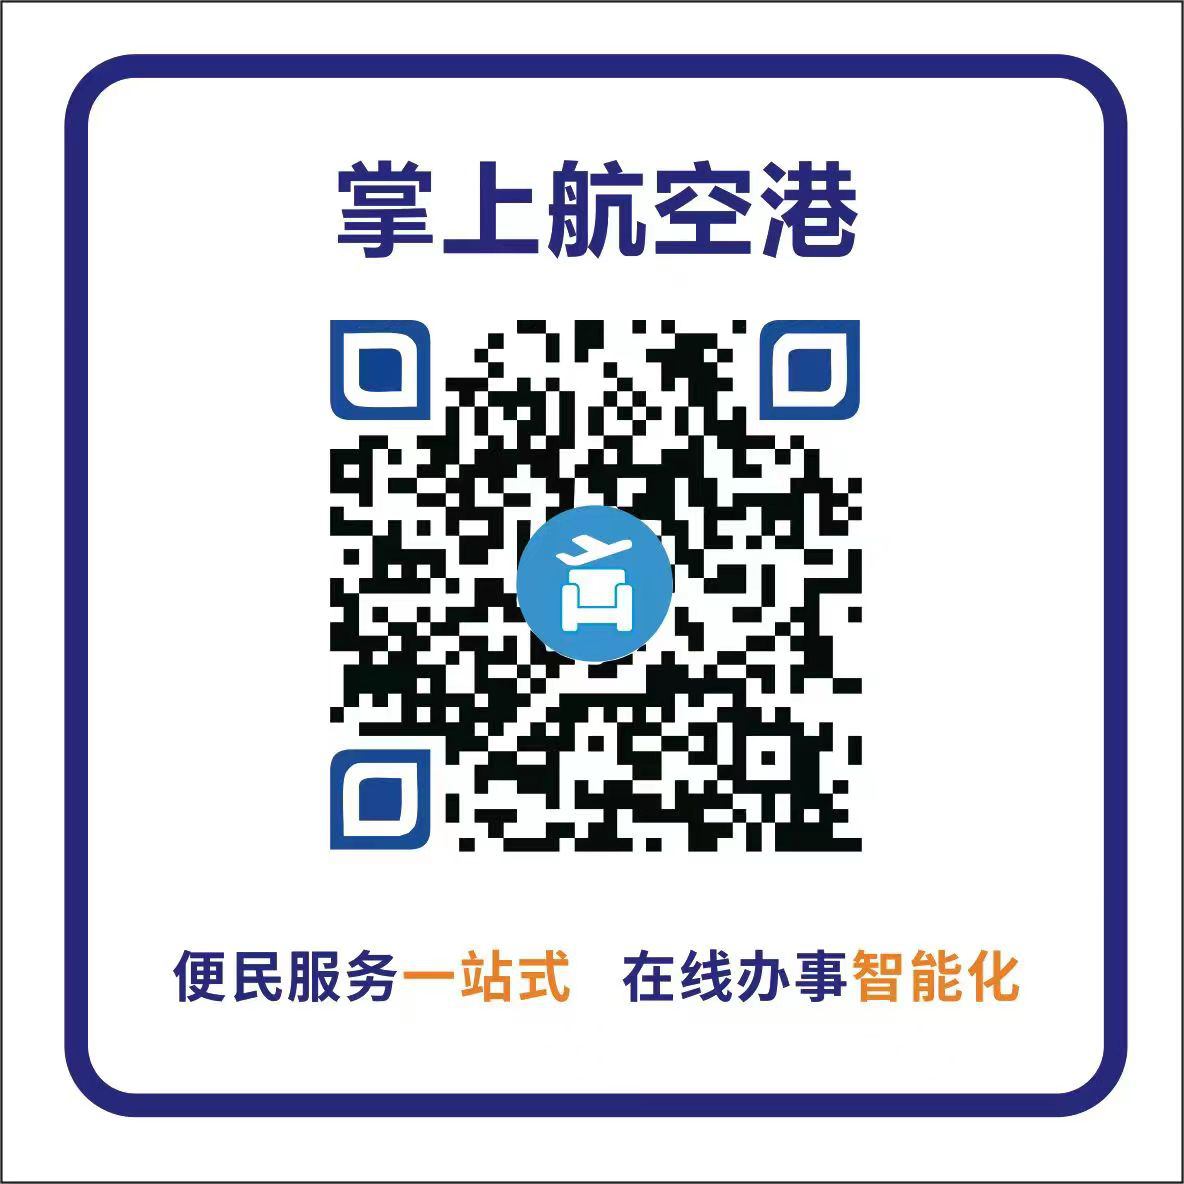 郑州航空港区不动产登记中心网上预约服务公告及预约流程